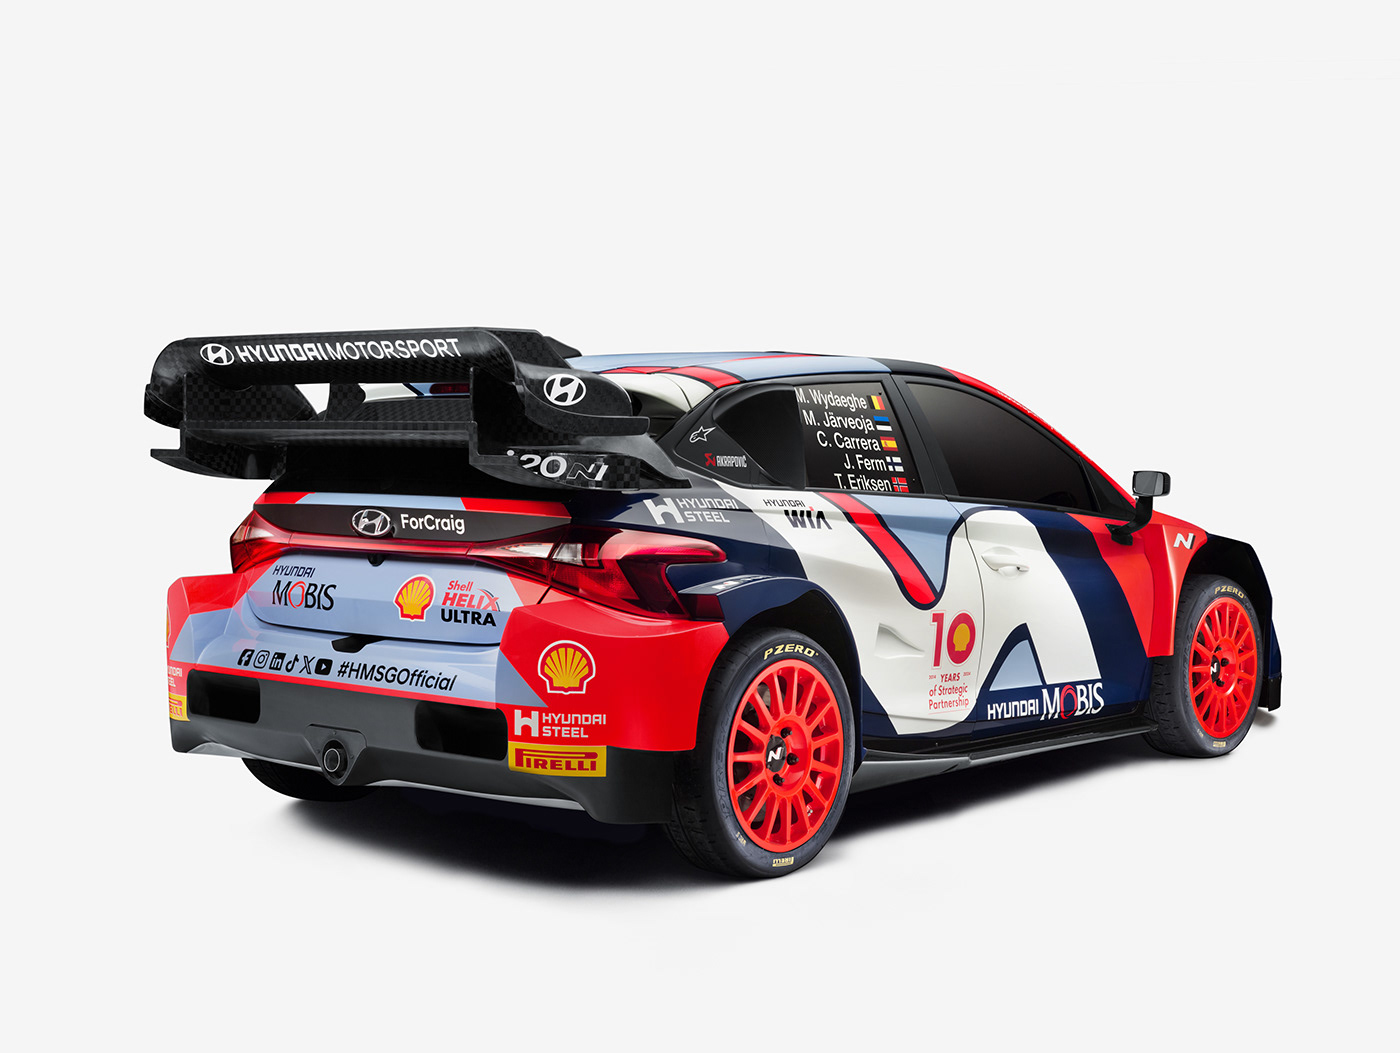 WRC Livery livery design Hyundai rally car branding  graphic design 